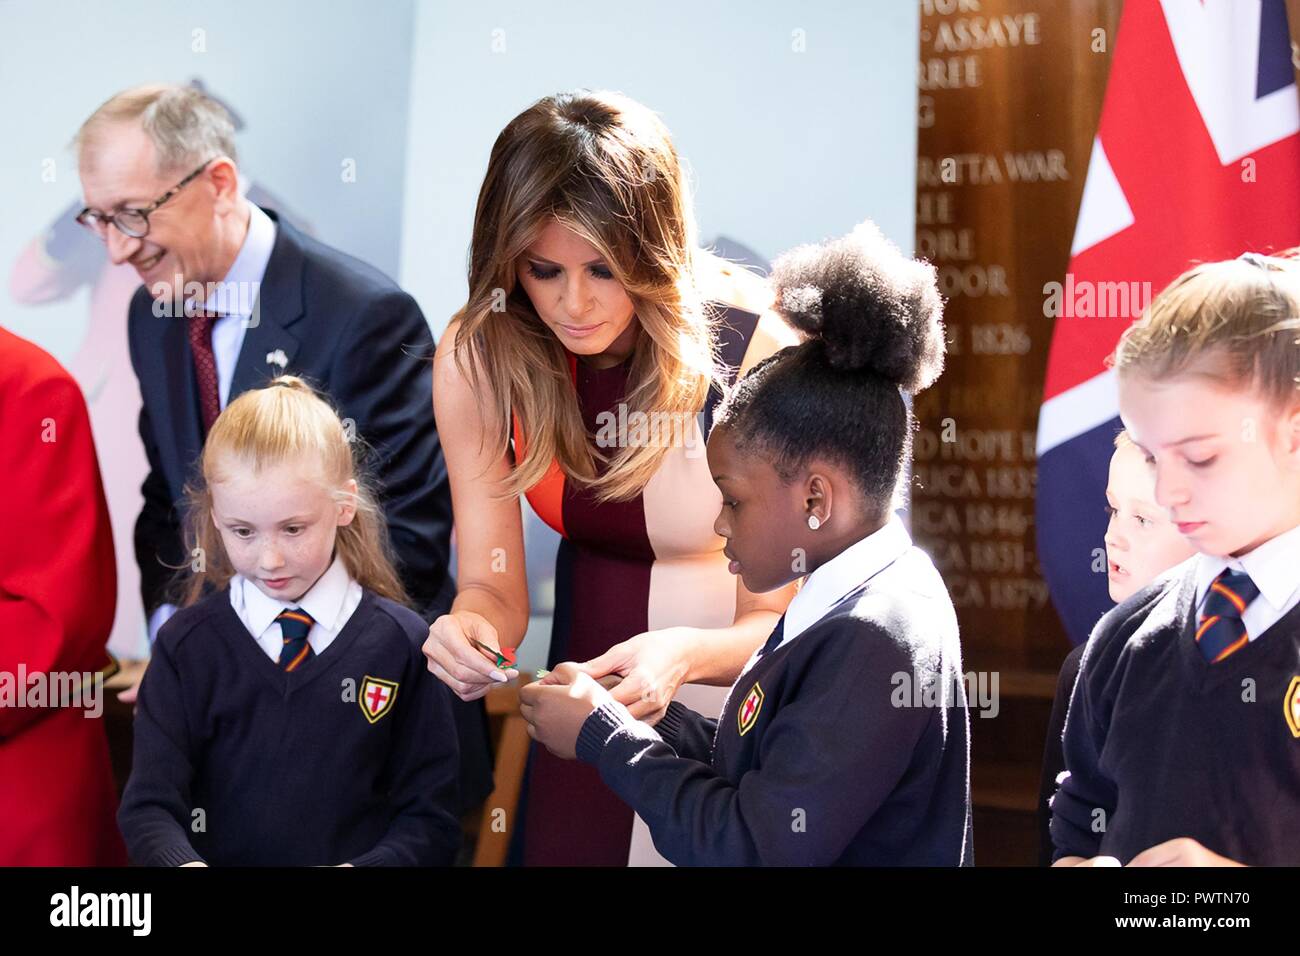 La première dame des États-Unis Melania Trump et Philip Mai, mari de Premier ministre britannique Theresa May, discuter avec les jeunes enfants de l'école au cours d'une visite au Royal Hospital Chelsea le 13 juillet 2018 à Londres, Royaume-Uni. Banque D'Images